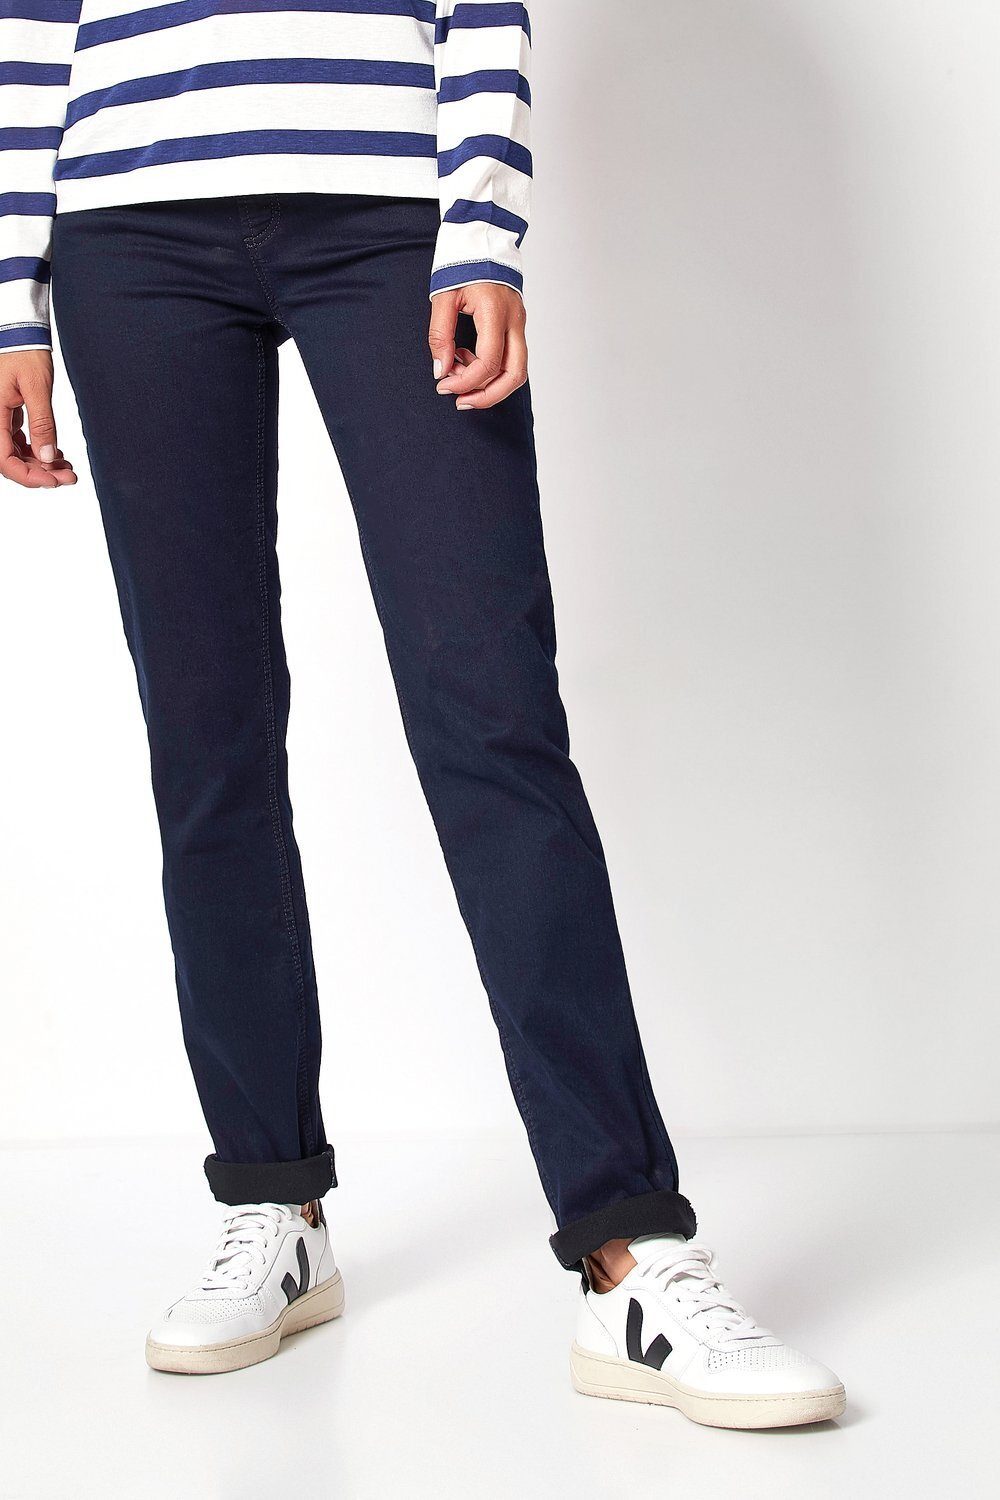 TONI 5-Pocket-Jeans Liv 059 dunkelblau in Regular-Fit 